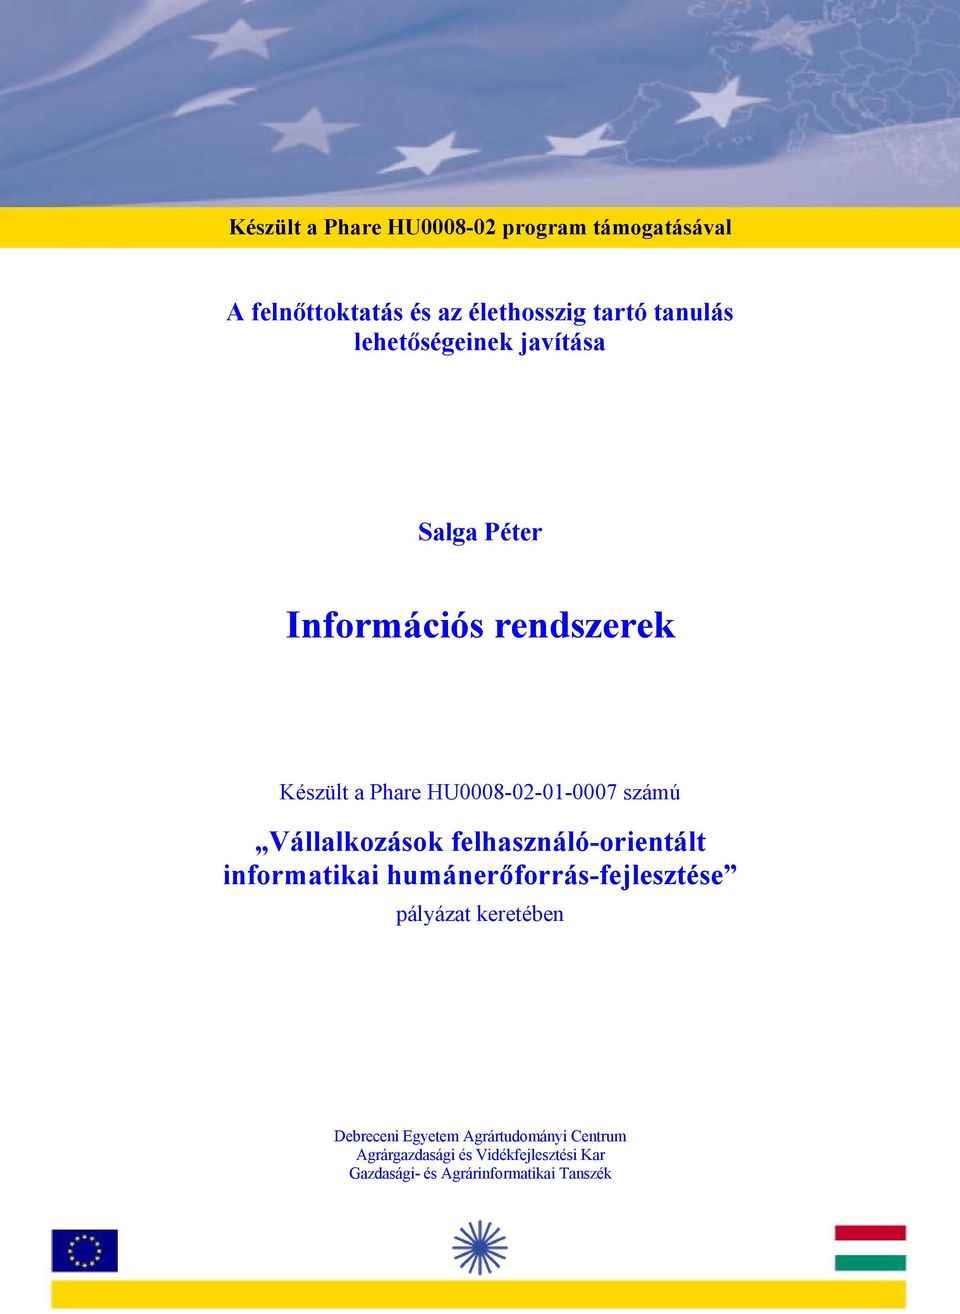 felhasználó-orientált informatikai humánerőforrás-fejlesztése pályázat keretében Debreceni